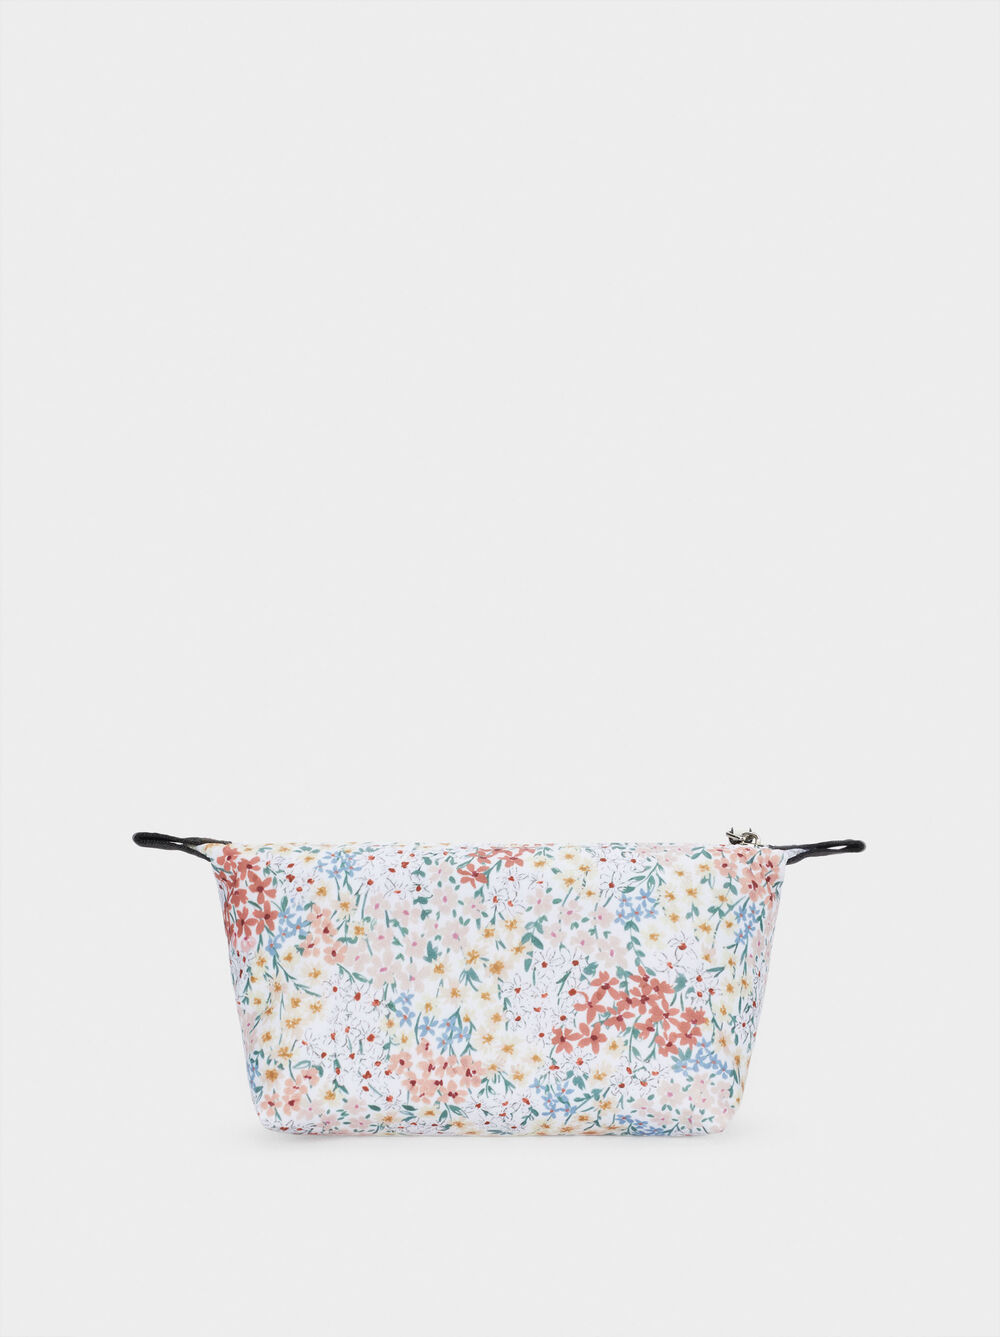 Floral Print Multi-Purpose Bag